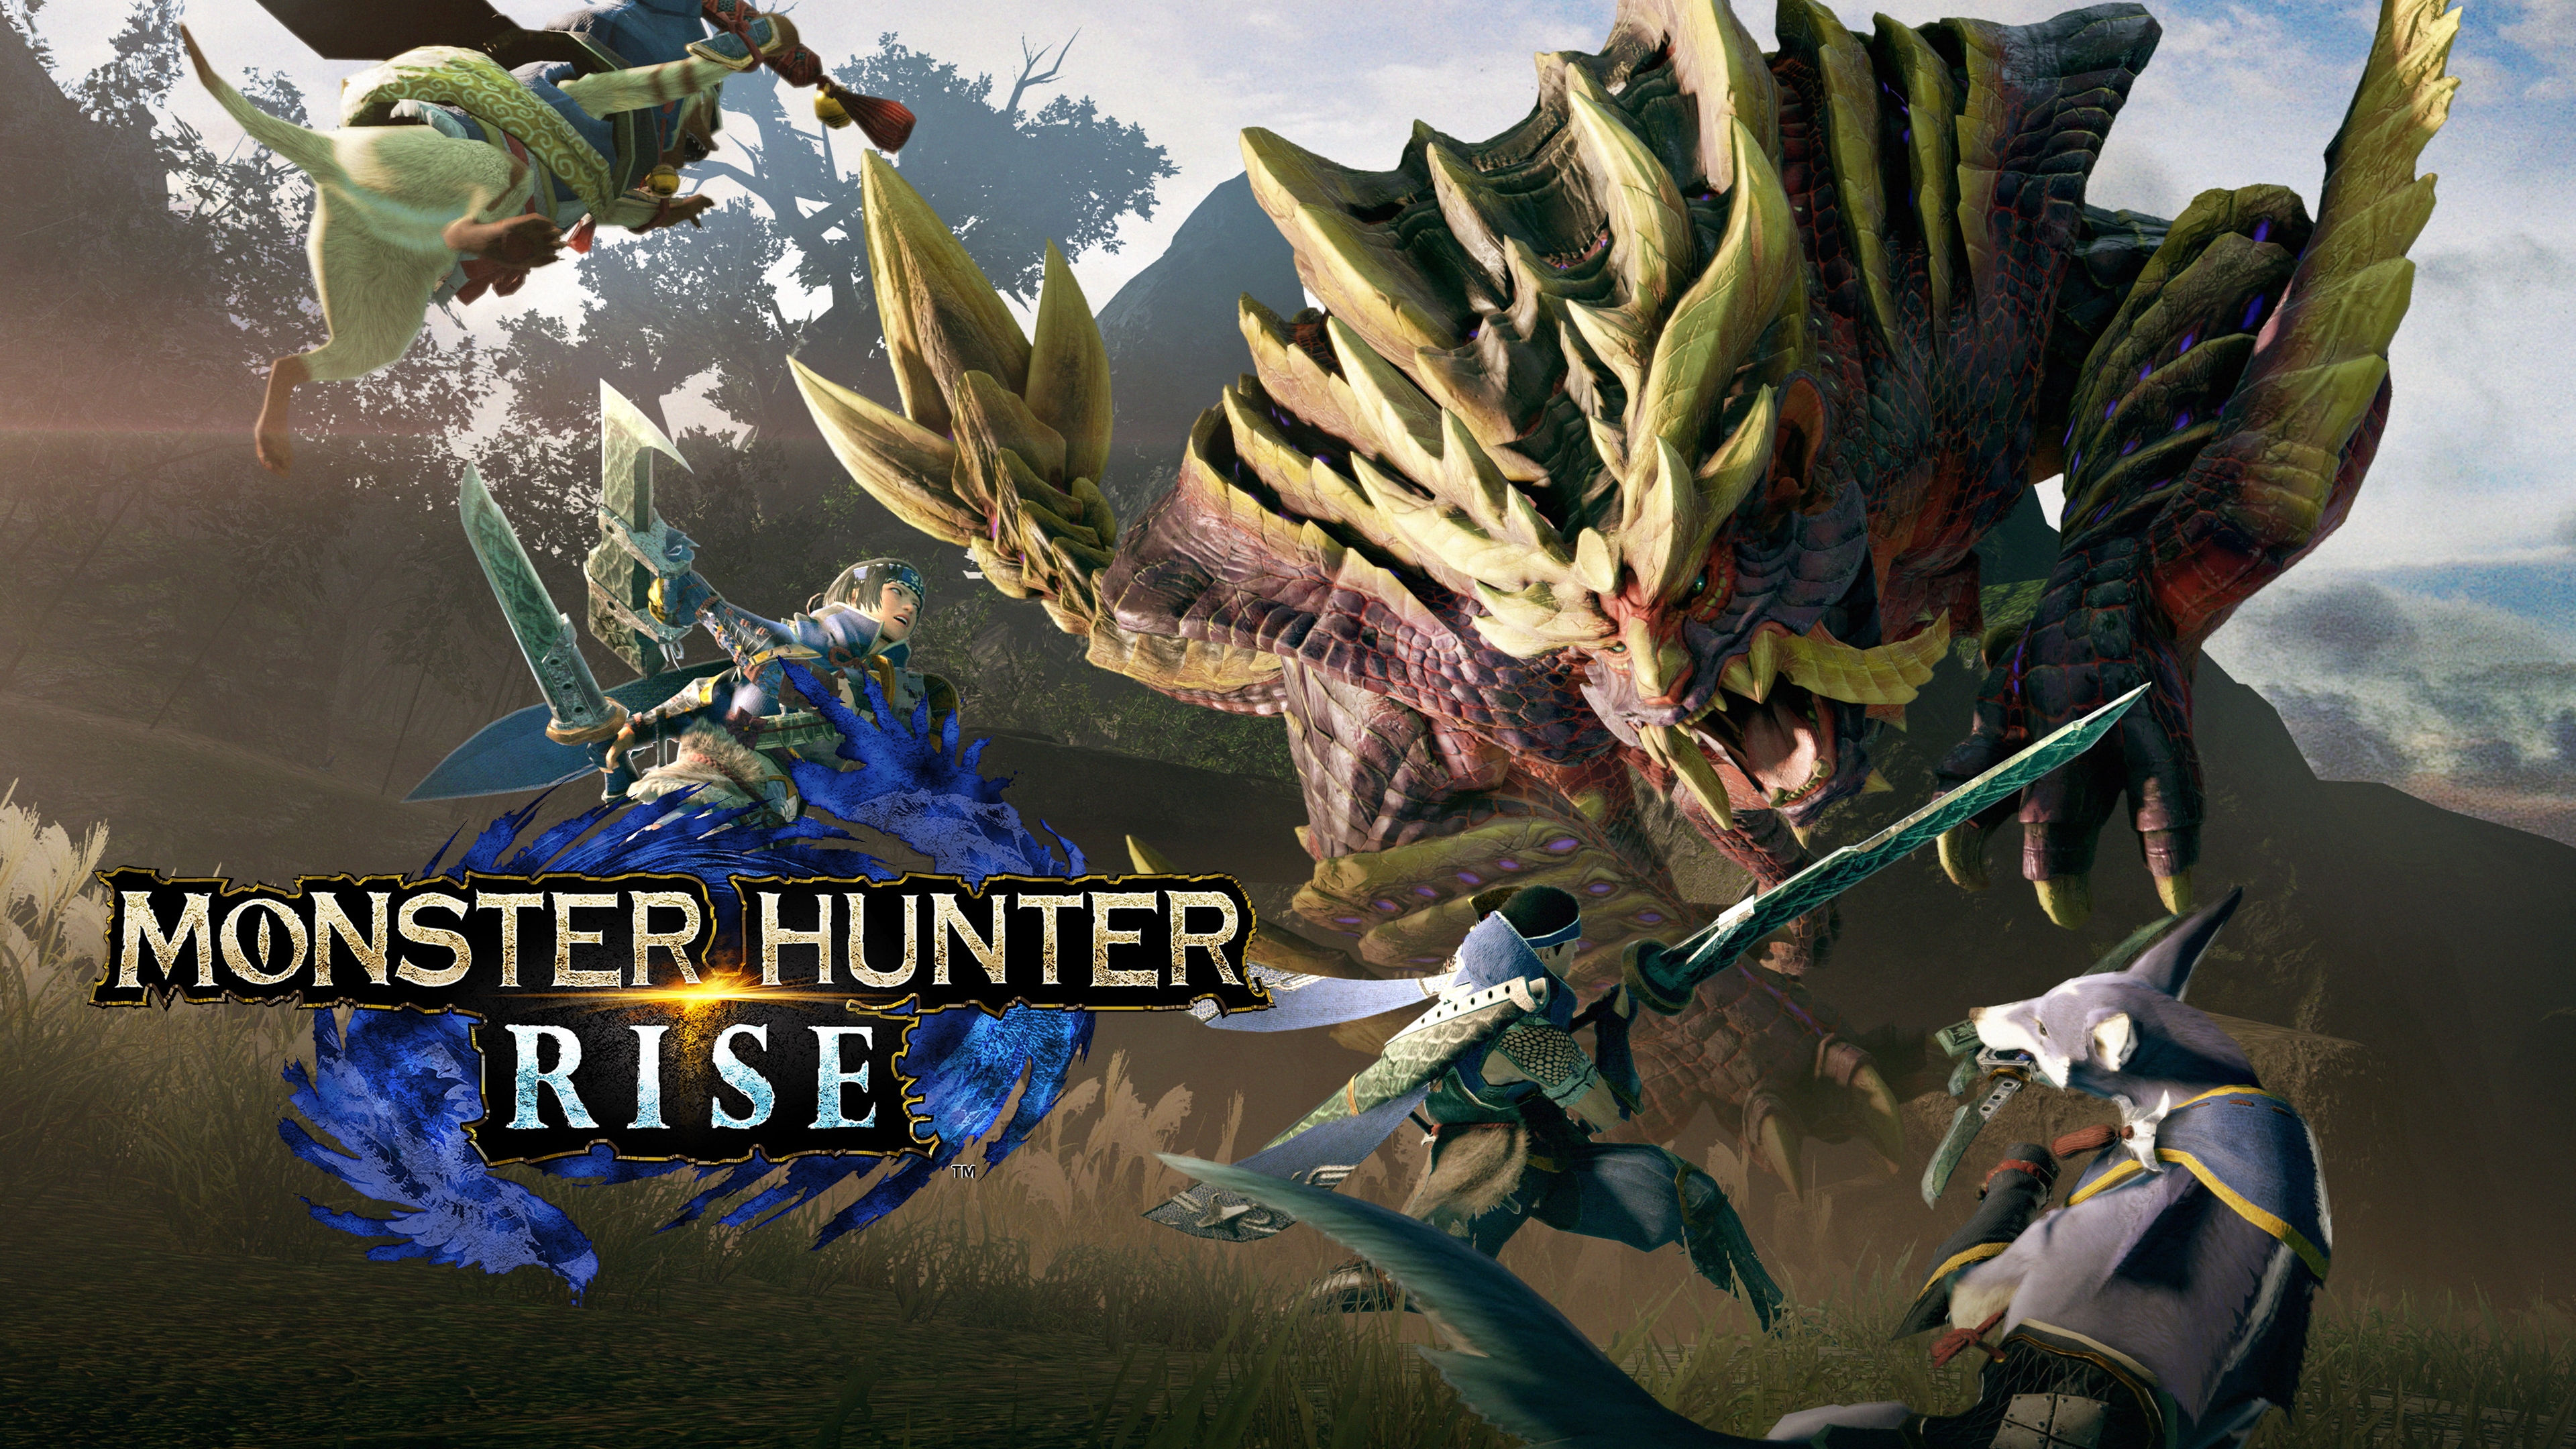 Buy Monster Hunter Rise: Sunbreak Steam